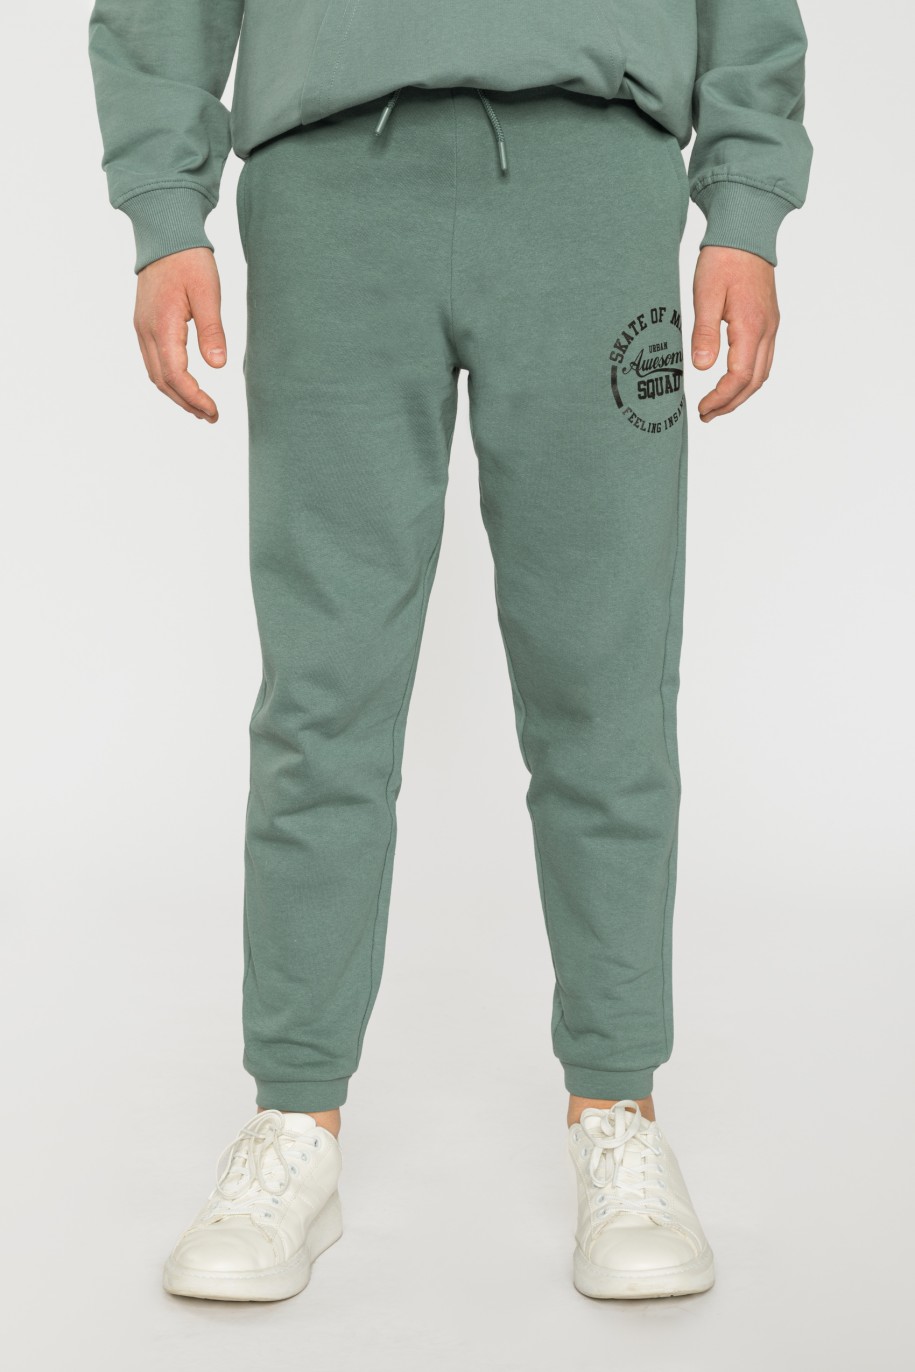 Zielone spodnie dresowe dla chłopaka SKATE OF MIND - 33140